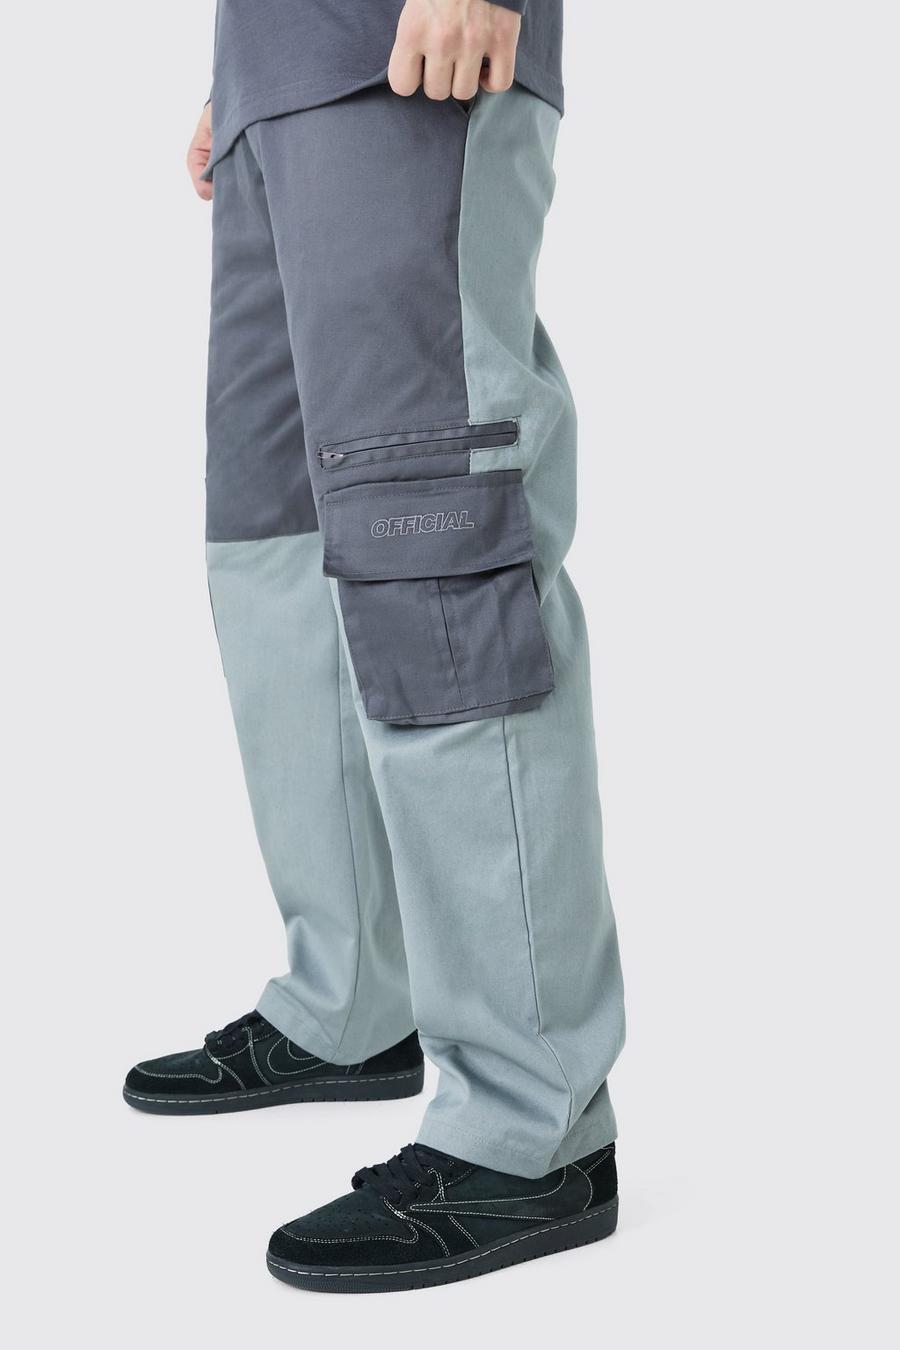 Pantaloni Cargo Tall rilassati a blocchi di colore con logo Official, Charcoal grigio